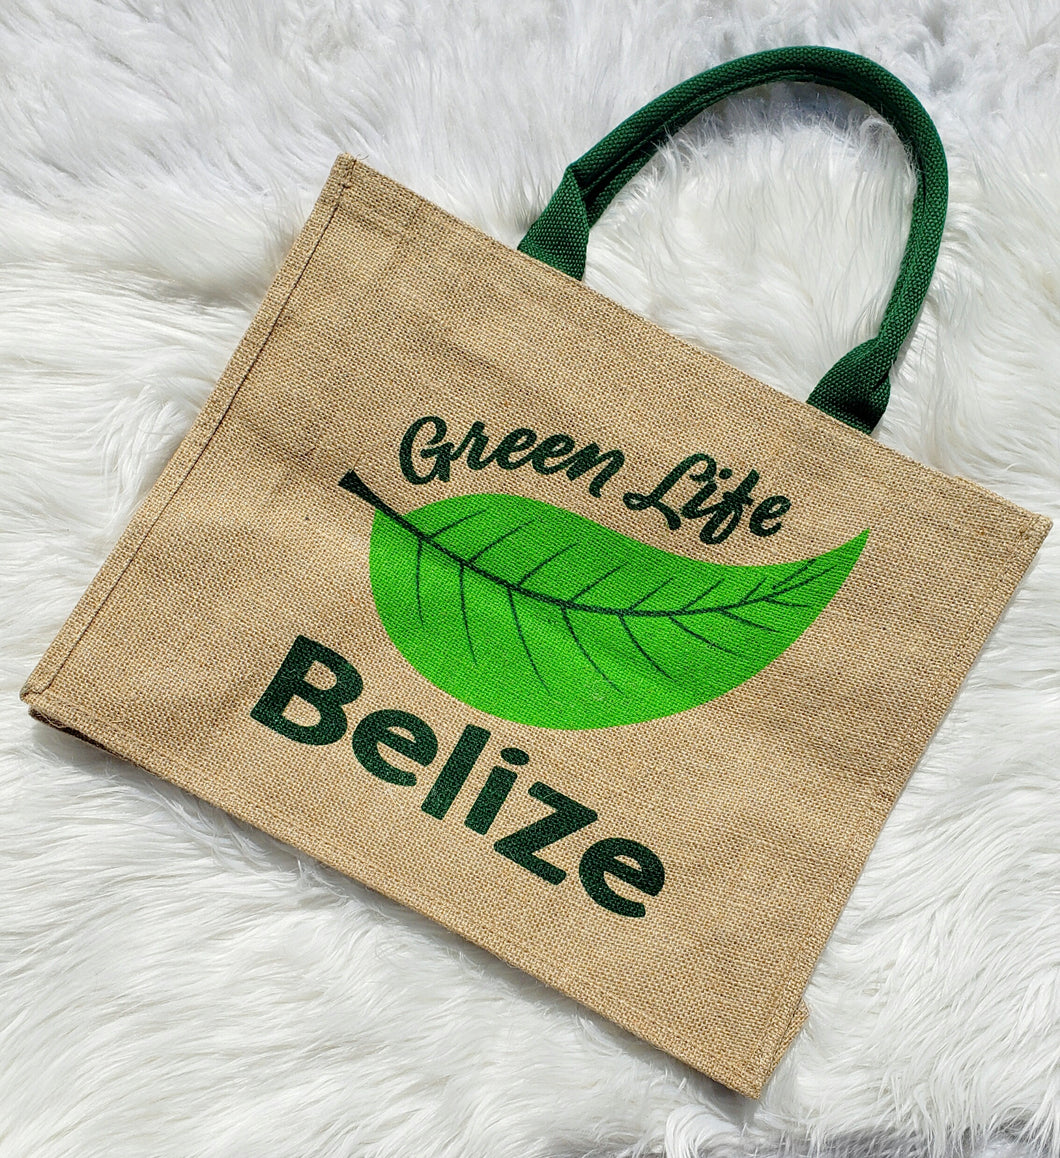 Go Green Belize Bag